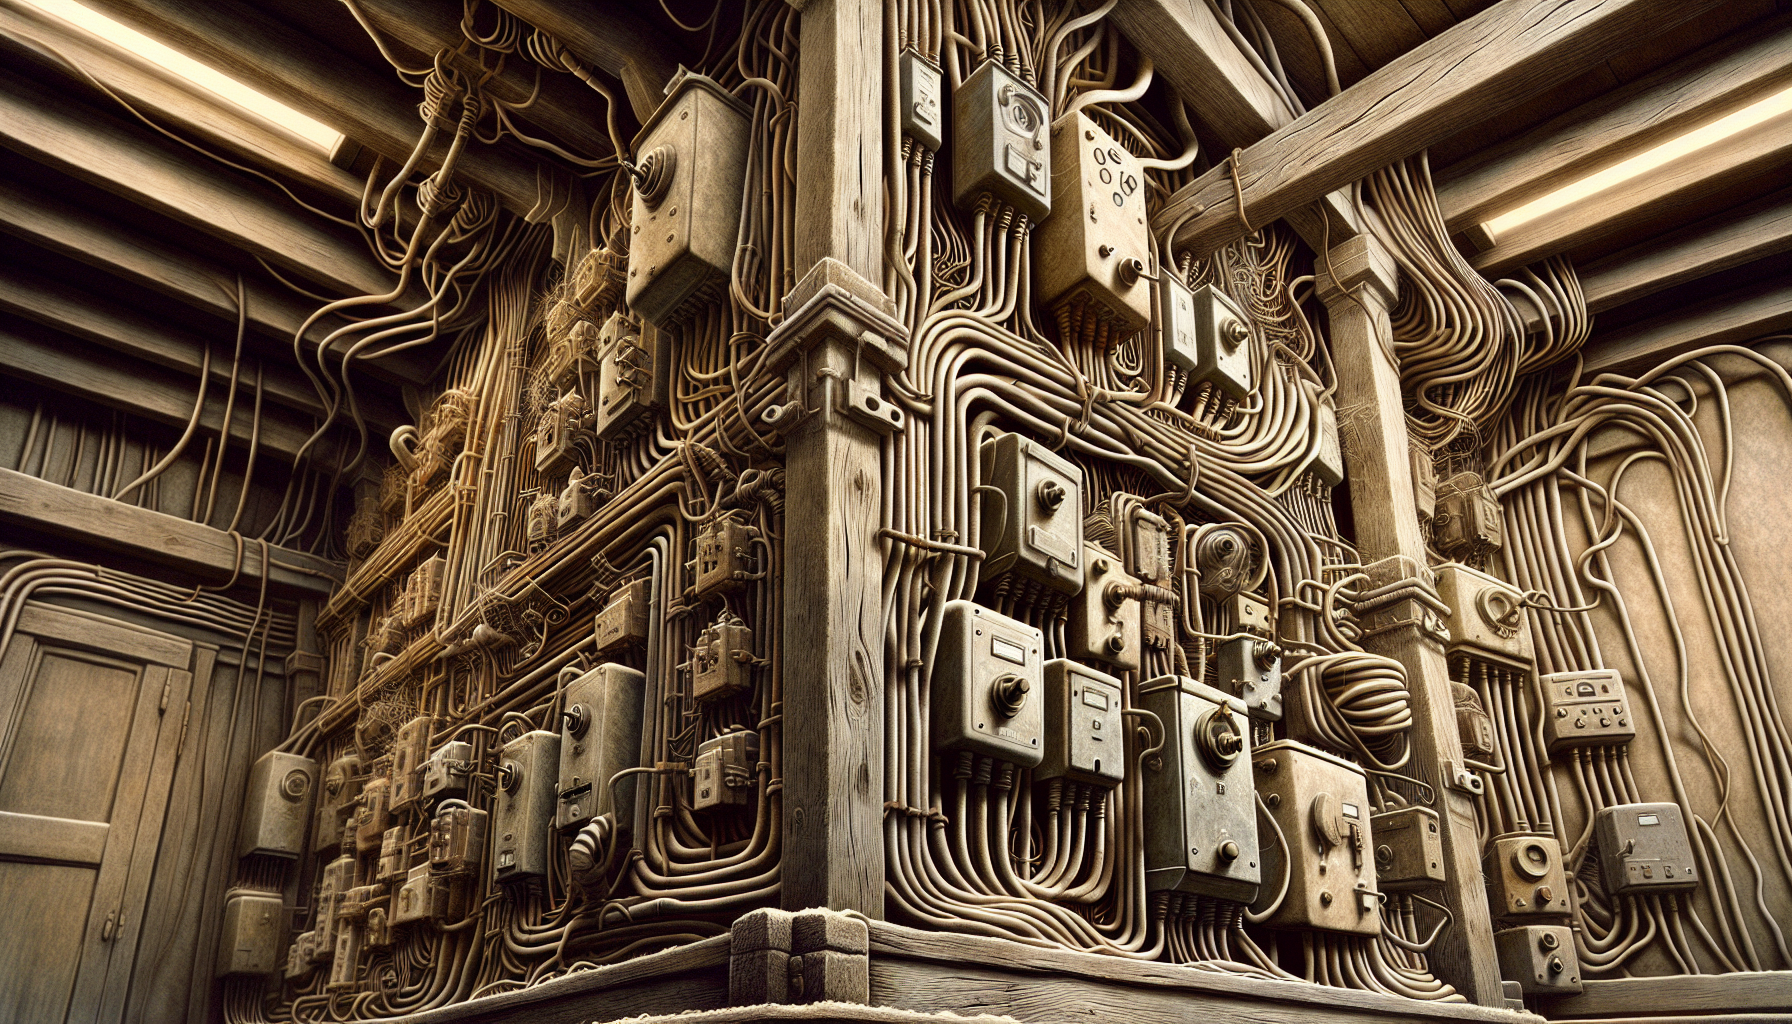 Illustration einer alten elektrischen Anlage in einem Altbaus